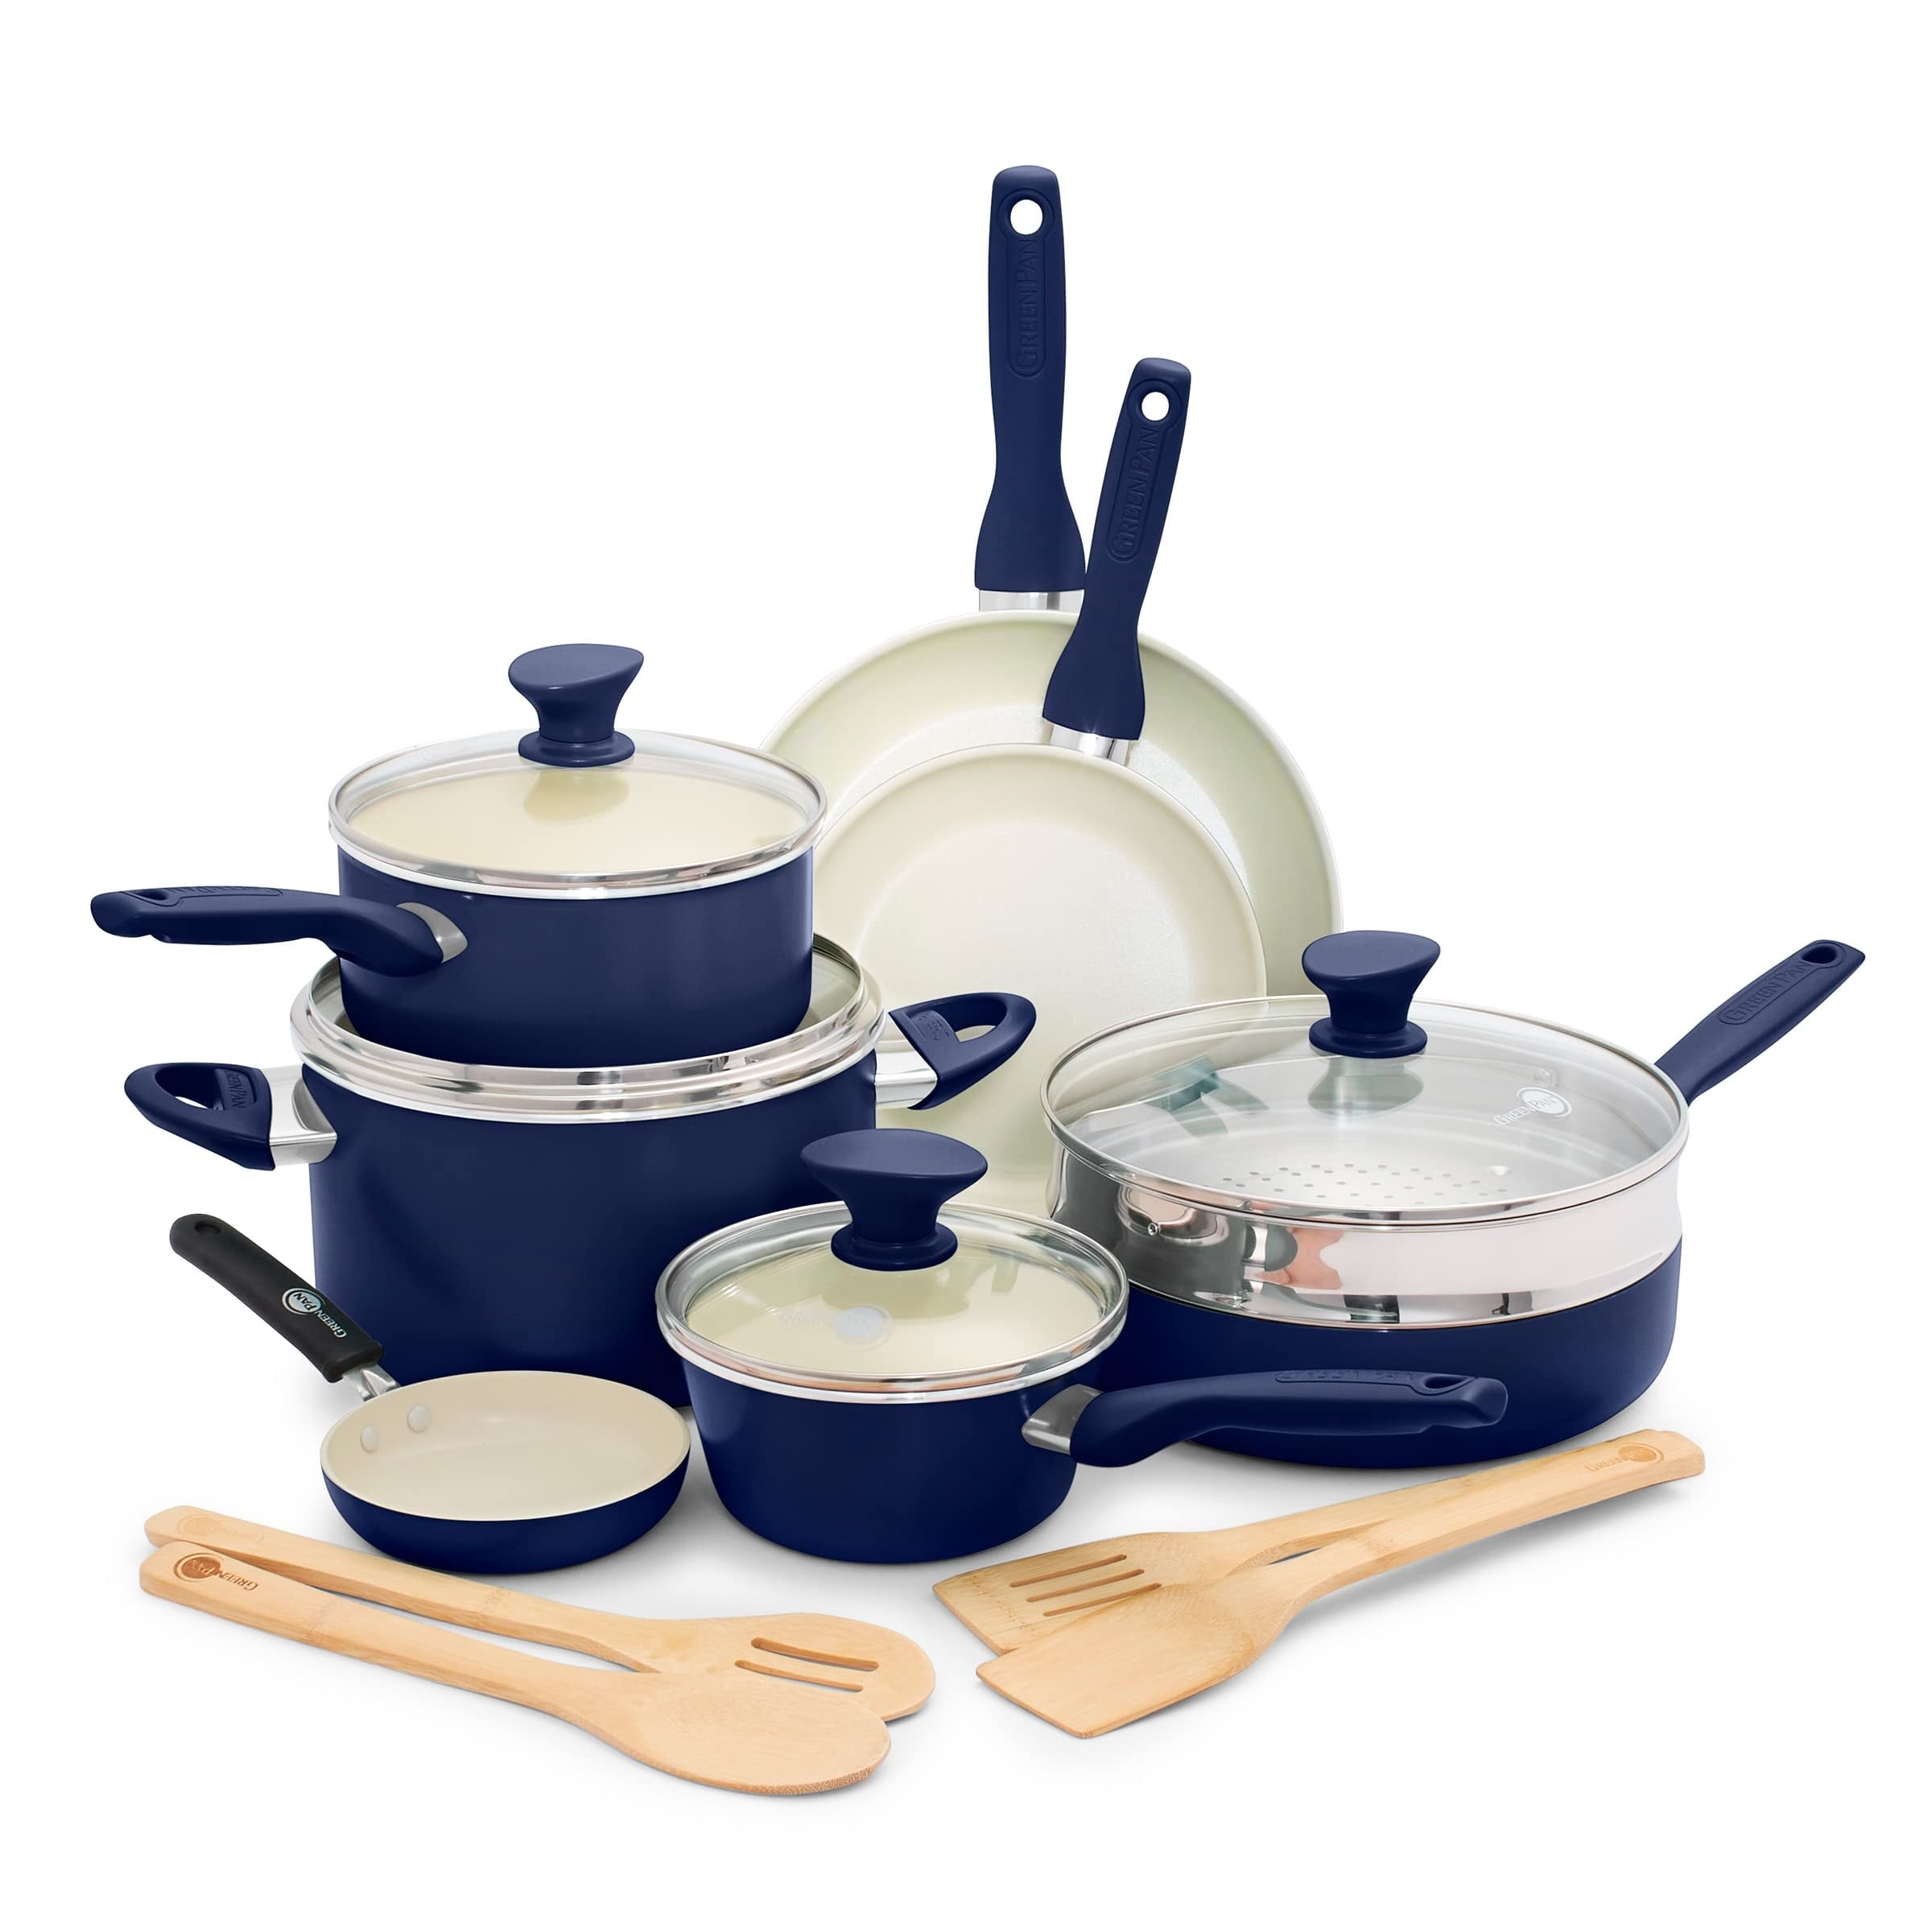 Ceramic Nonstick 16 Piece Cookware Pots and Pans Set, PFAS-Free